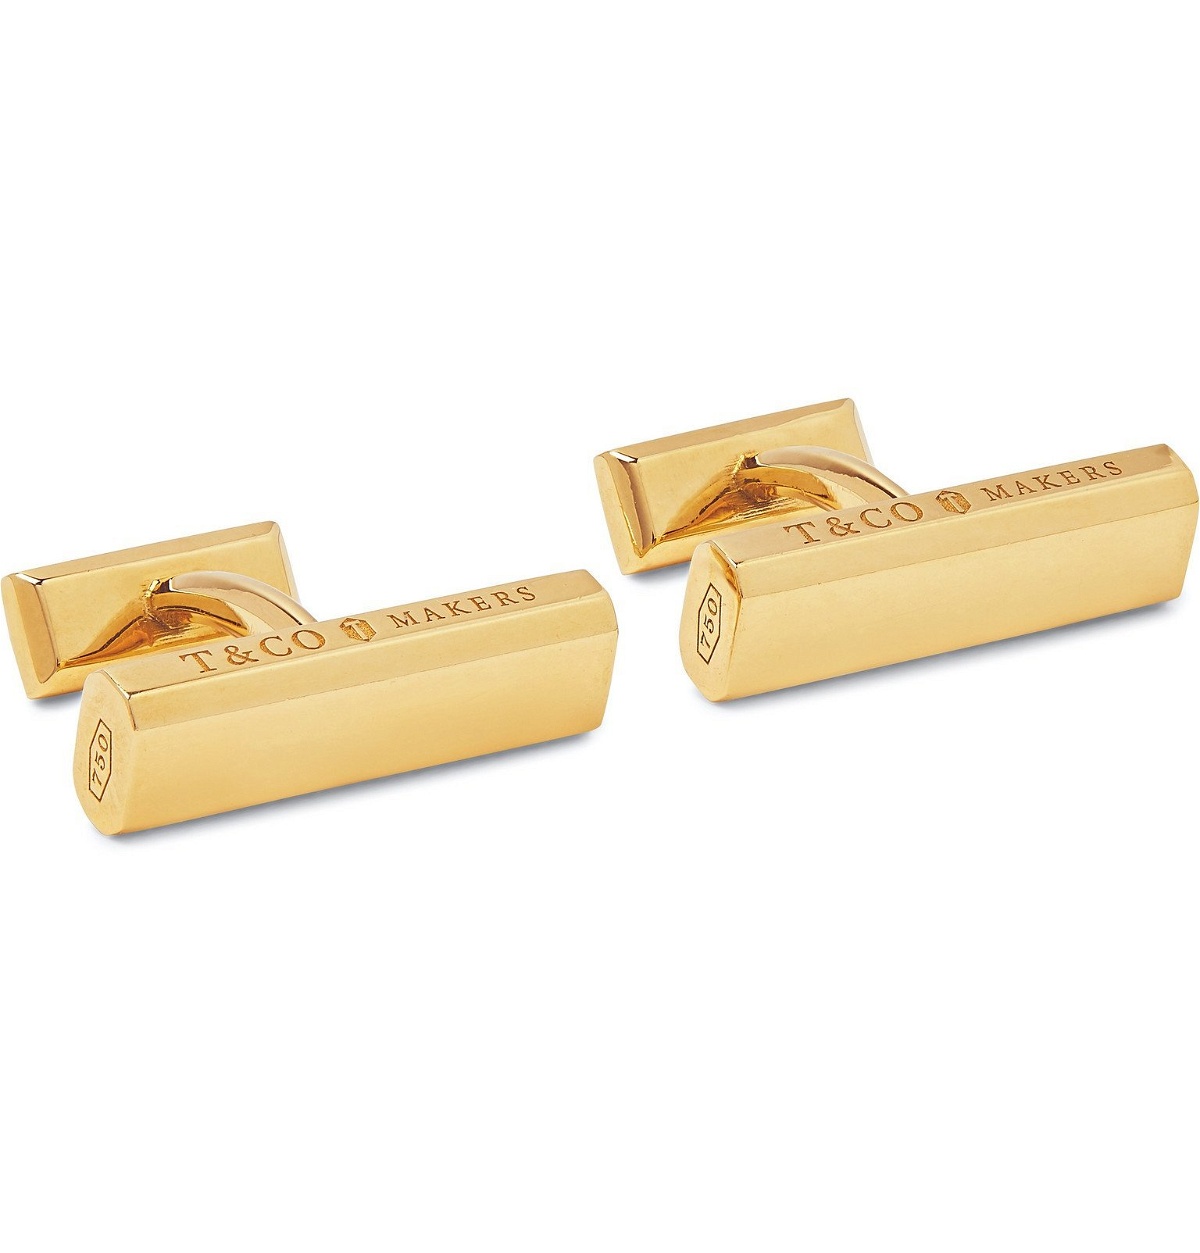 Tiffany & Co. - Tiffany 1837 Makers 18-Karat Gold Cufflinks - Gold